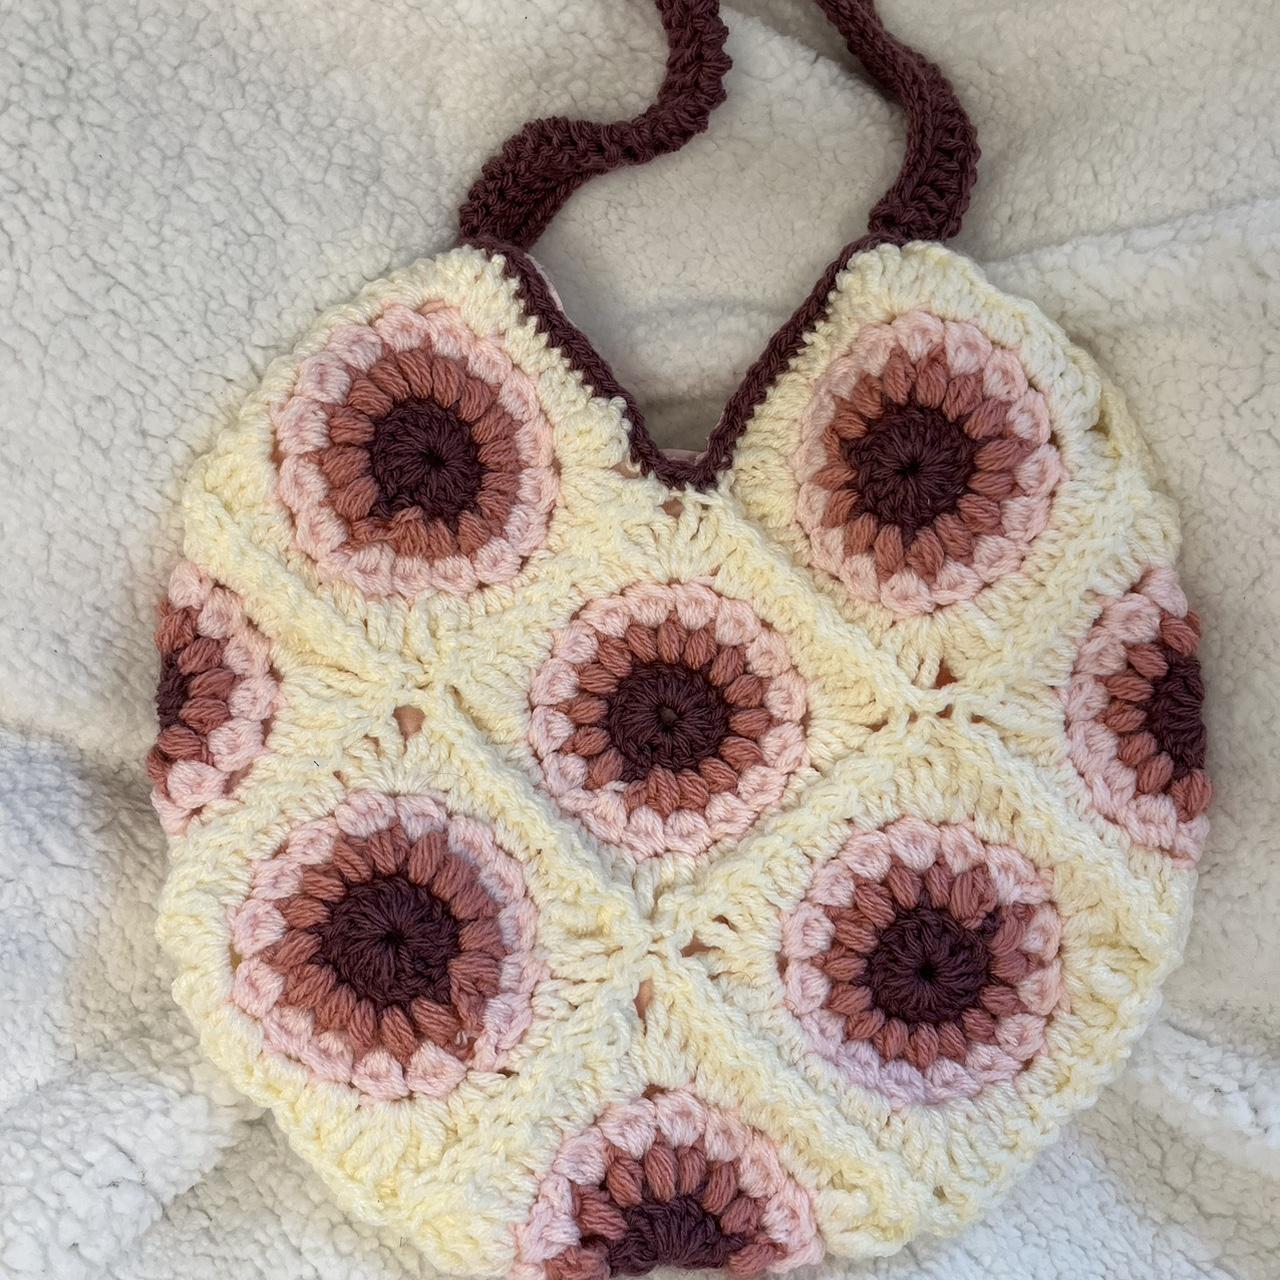 Crochet Purses Made by Rosalina Lee – 1001 Crochet